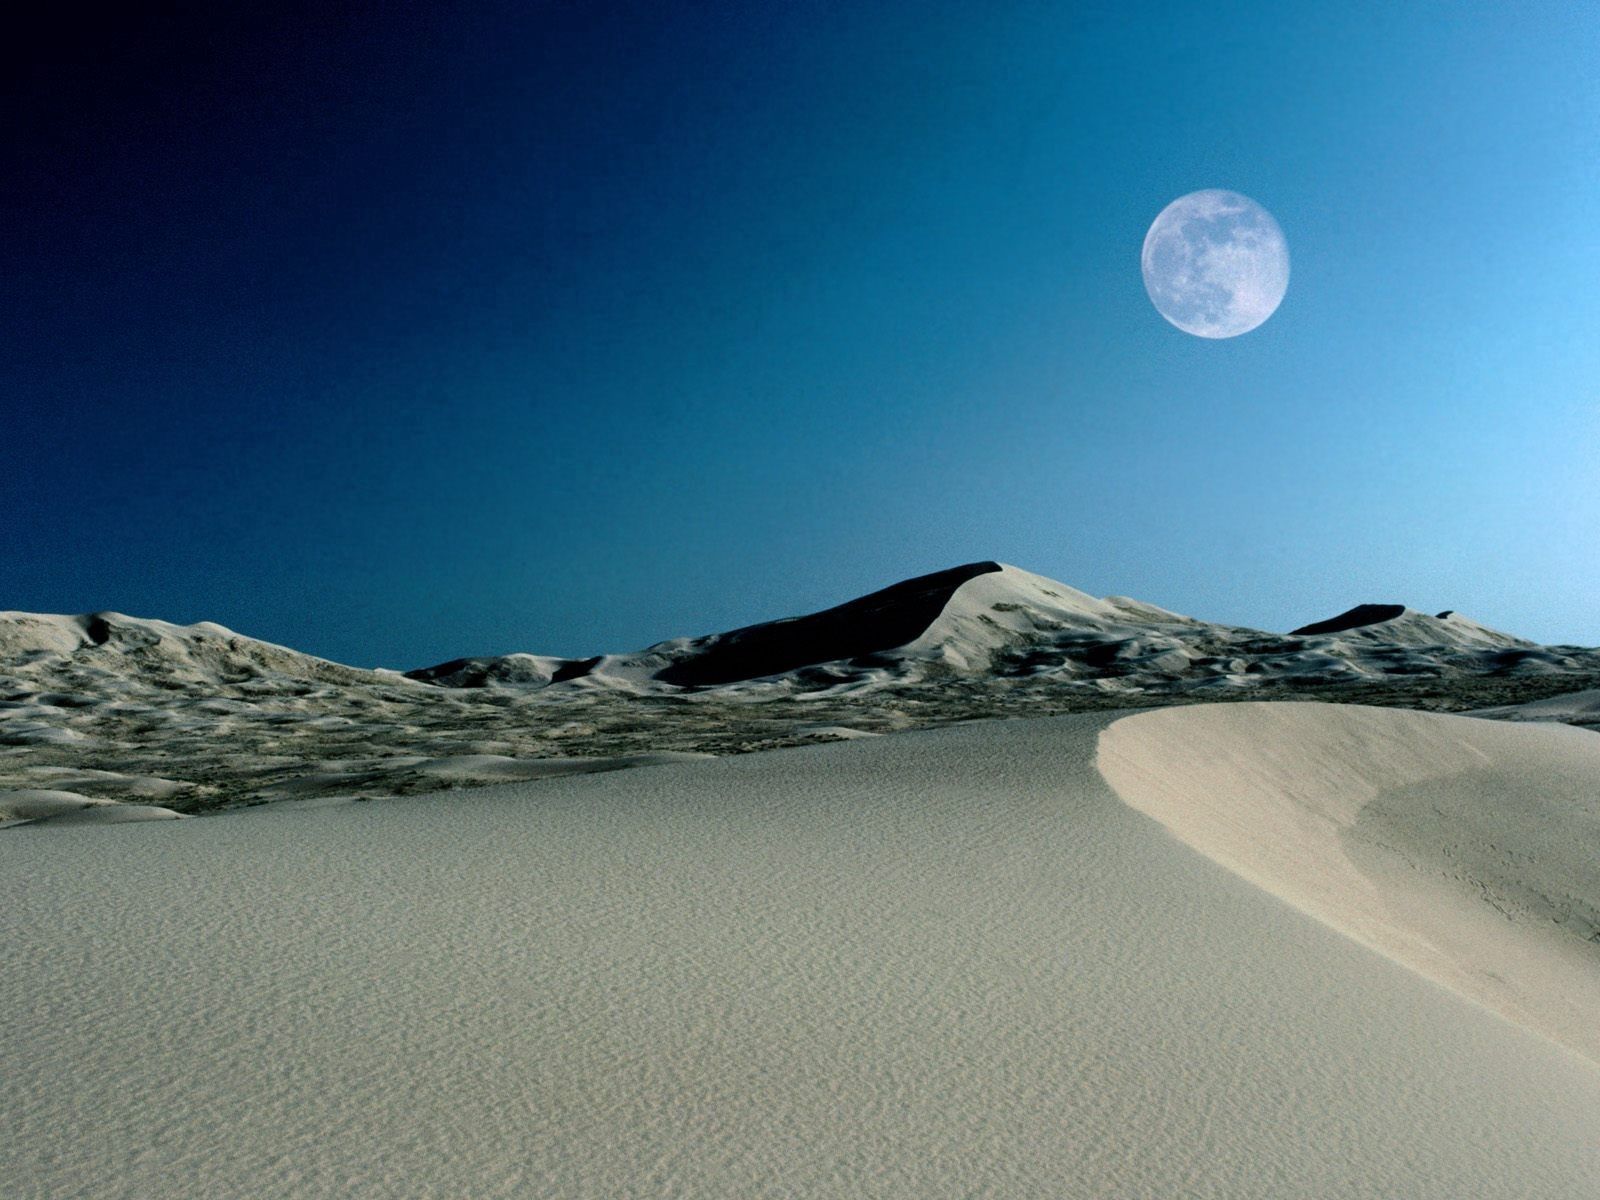 Скачать обои бесплатно Природа, Небо, Песок, Пустыня, Дюны, Луна картинка на рабочий стол ПК